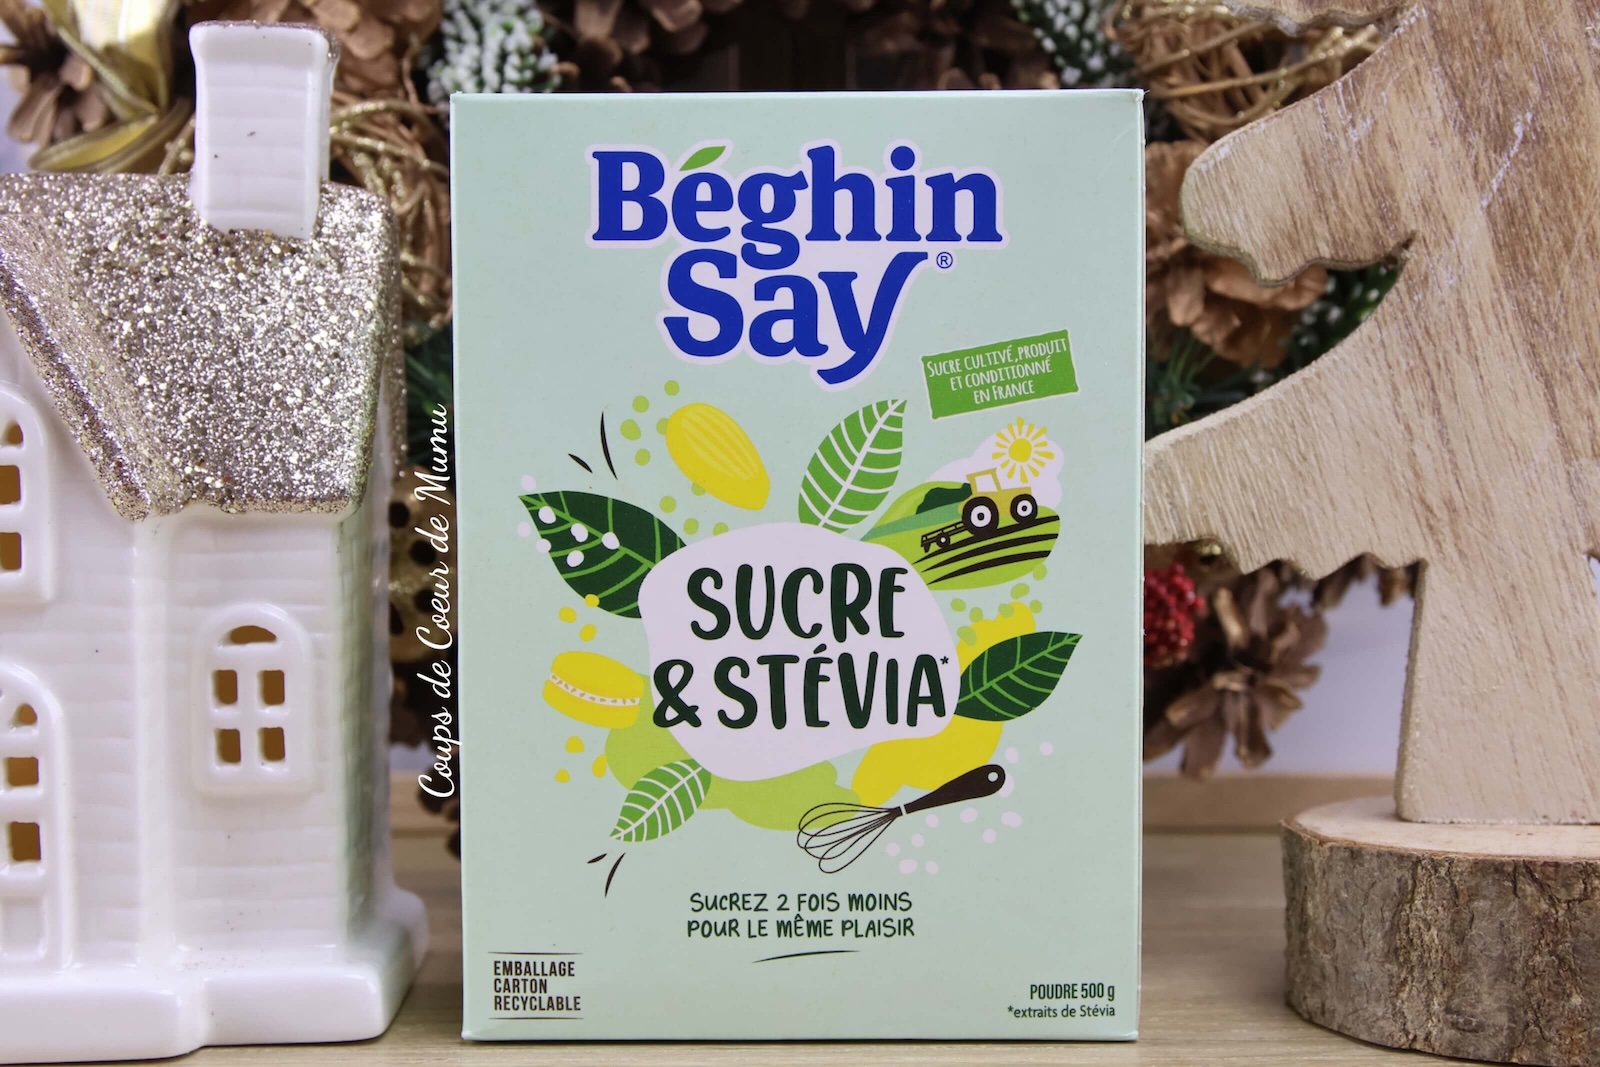 Sucre et Stevia Beghin Say